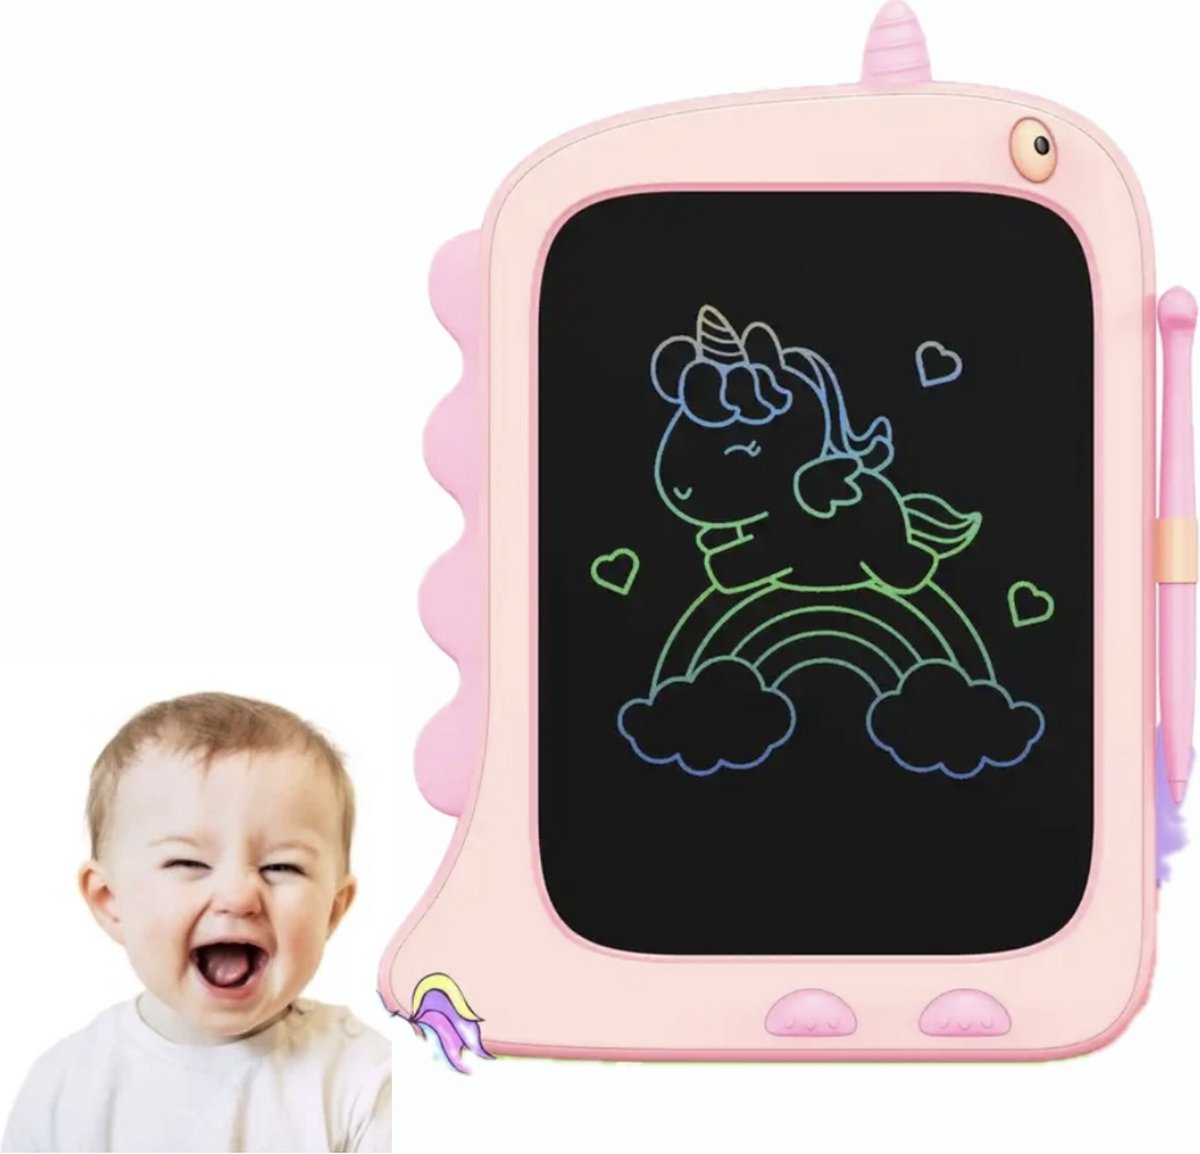 Magnetisch tekenbord - LCD tekentablet voor kinderen - digitaal tekenbord grafisch - draagbaar - kinderen 3-5 jaar - kinderen 5-8 jaar - speelgoed - leren tekenen - educatief voor kids - 8.5 inch - cadeau - roze